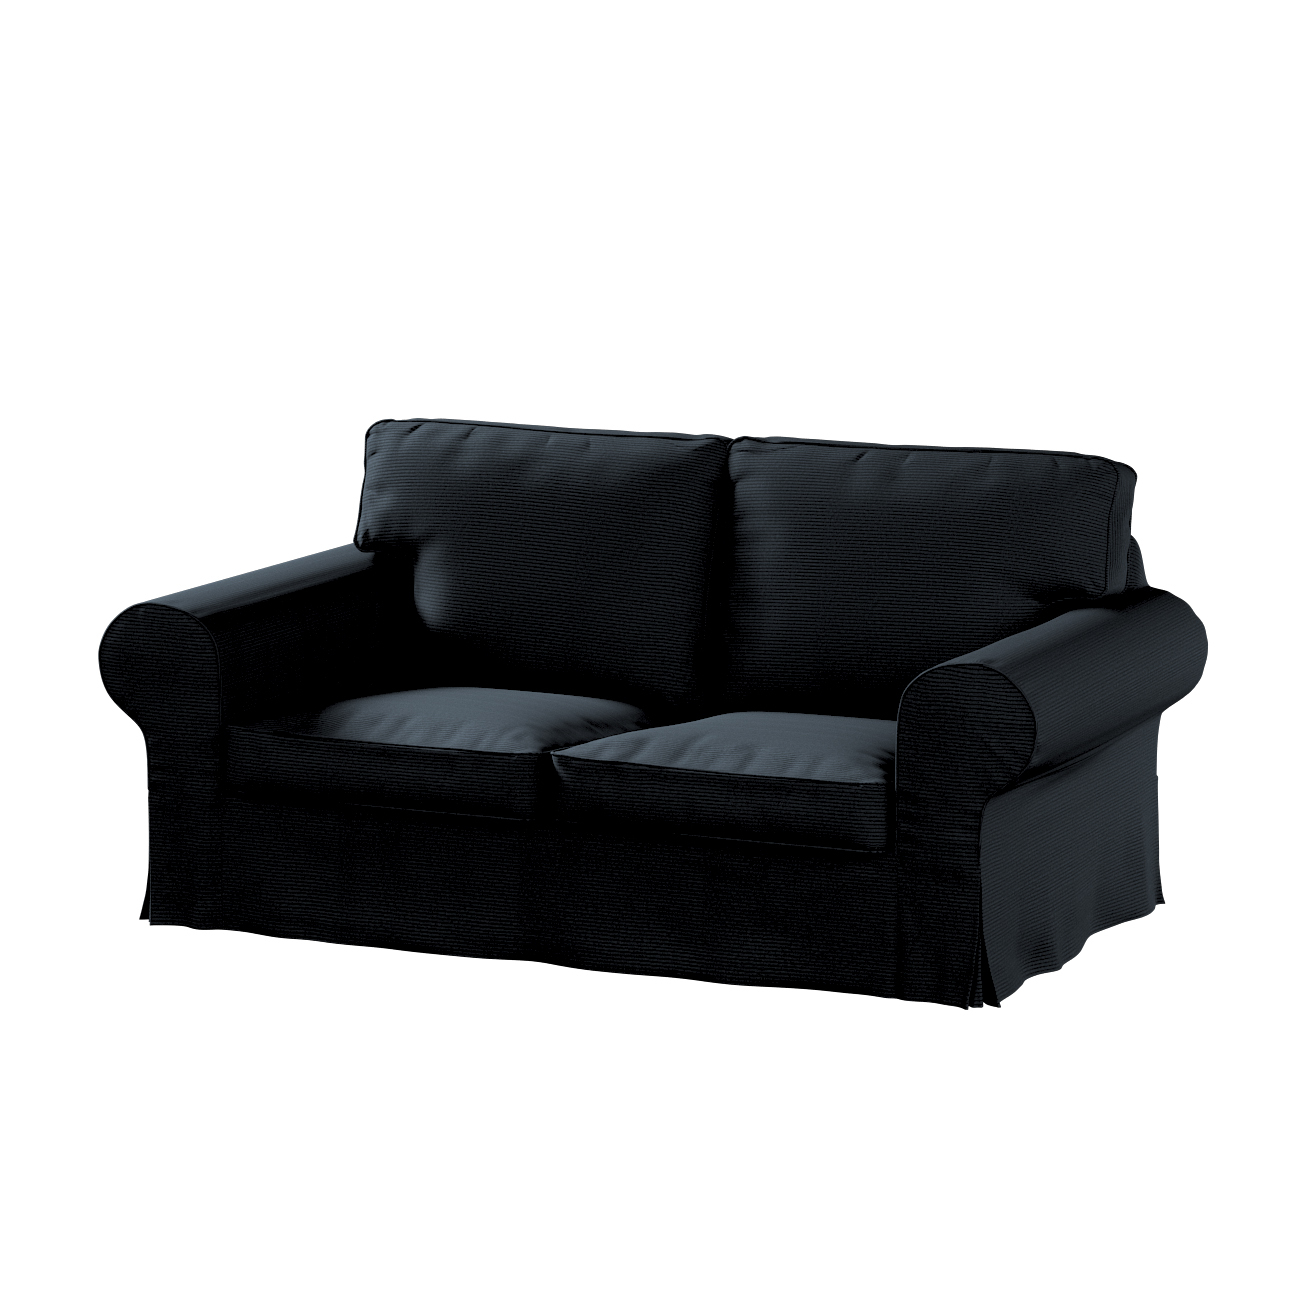 Bezug für Ektorp 2-Sitzer Schlafsofa NEUES Modell, anthrazit, Sofabezug für günstig online kaufen